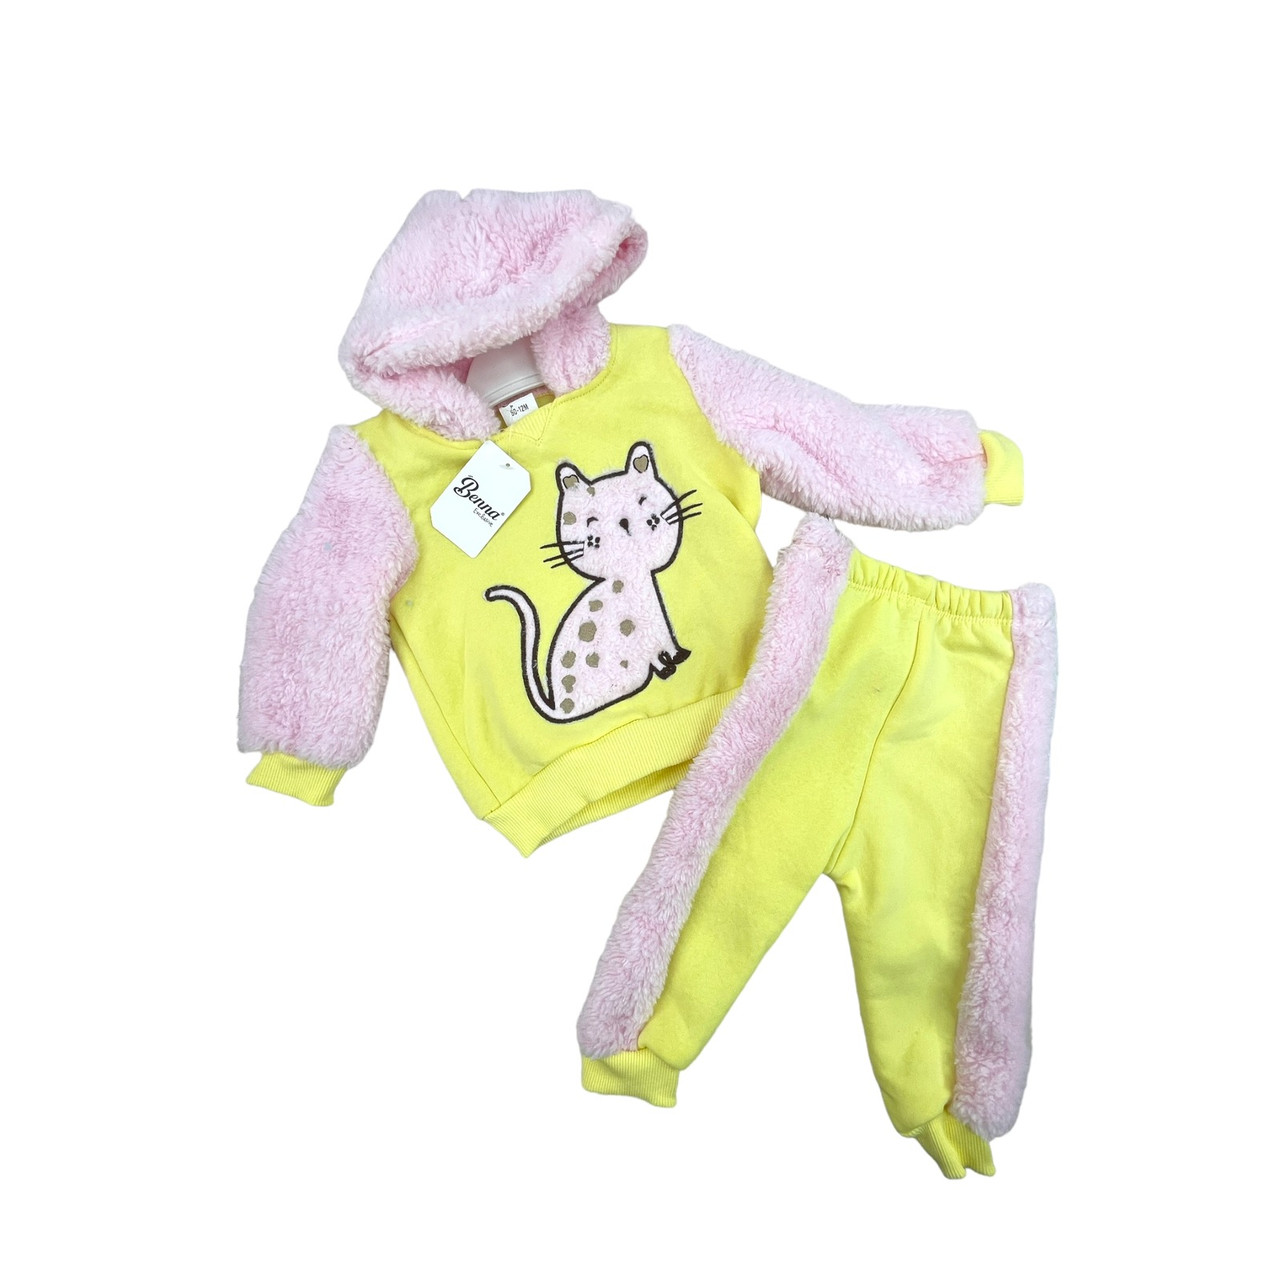 Дитячий зимовий костюм махровий, рожевий + жовтий, No 25056, (6-18 міс.)